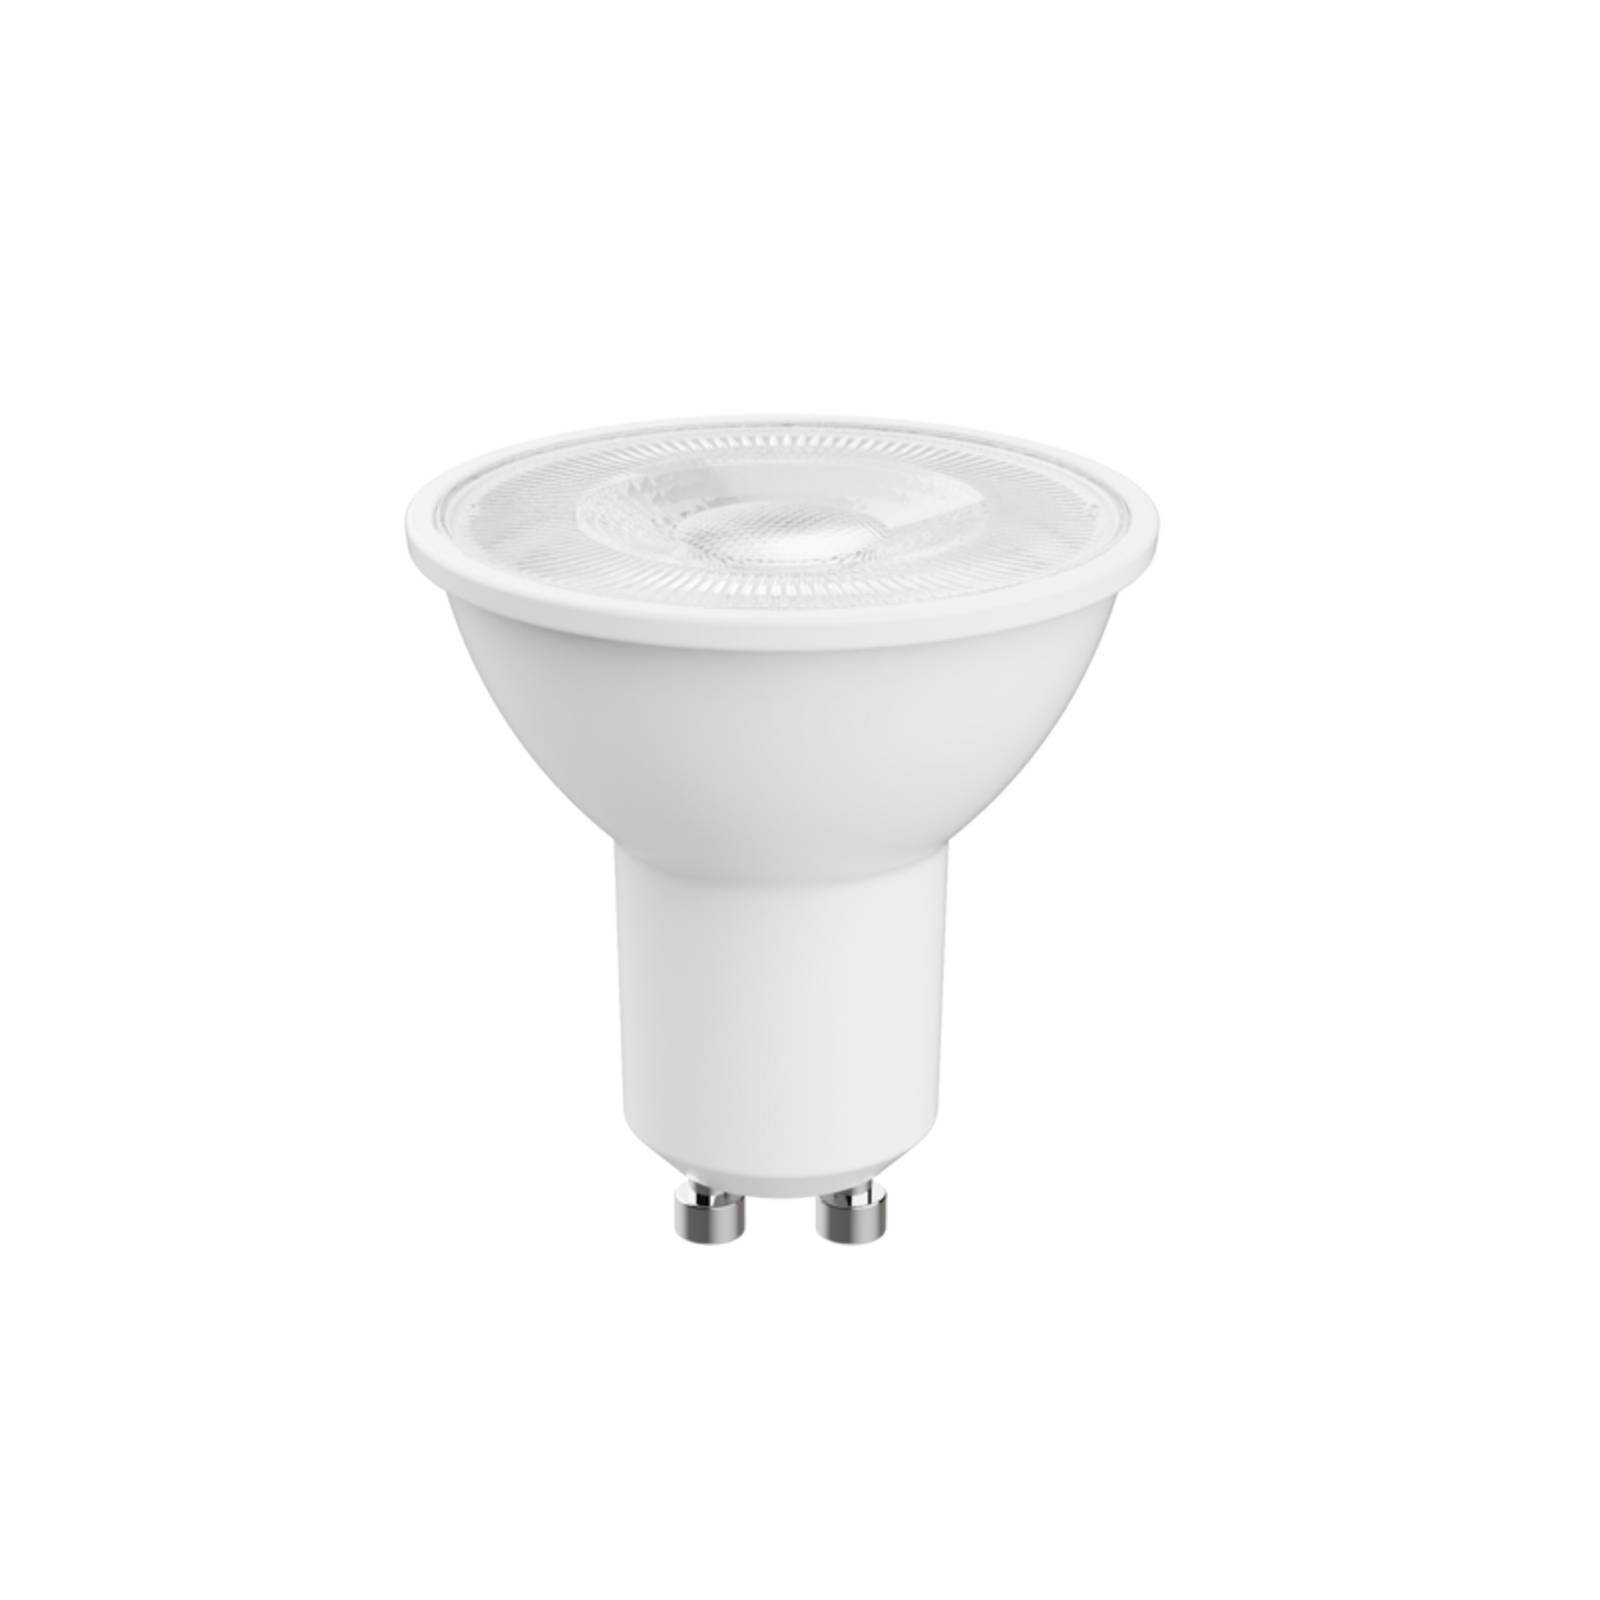 Arcchio LED žiarovka GU10 4 000 K nestmievateľná, plast, GU10, 2W, Energialuokka: A, P: 5.4 cm